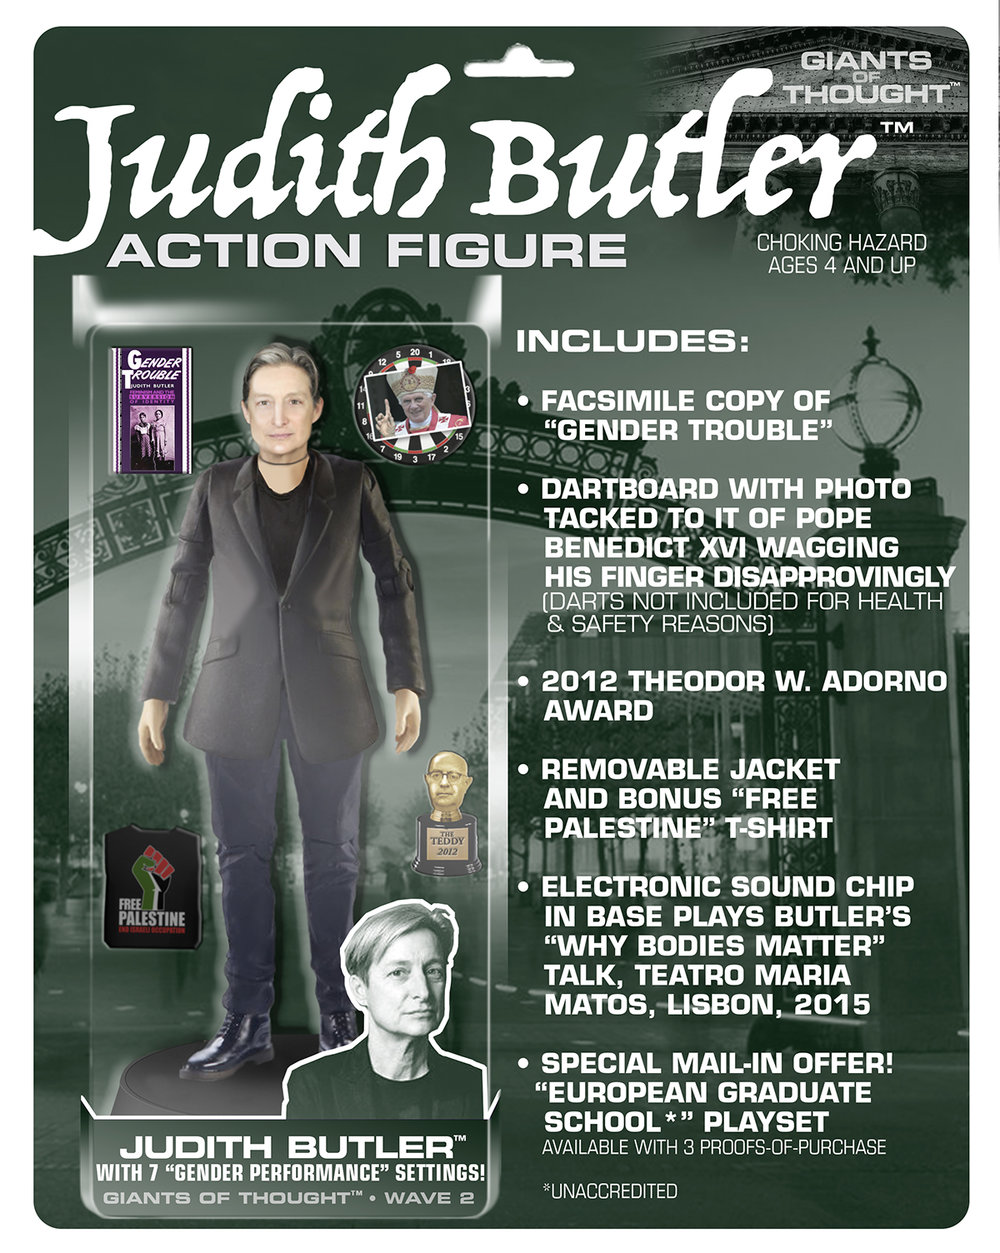 JudithButler-1.jpg